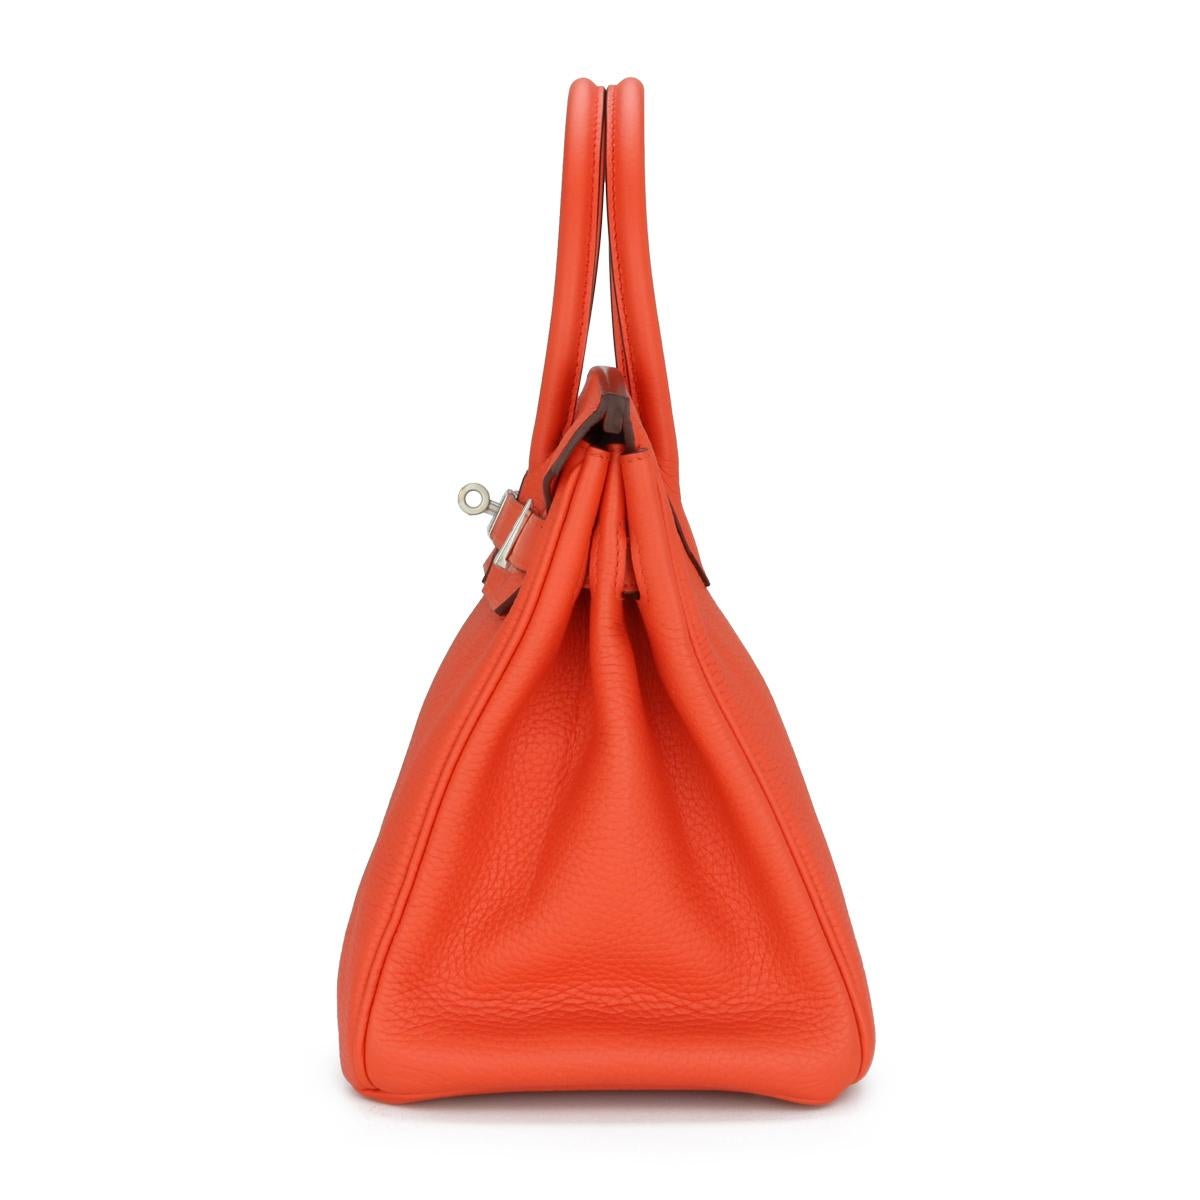 Hermès Birkin Bag 30cm Poppy Orange Togo Leather Palladium Hardware Stamp T 2015 For Sale 1